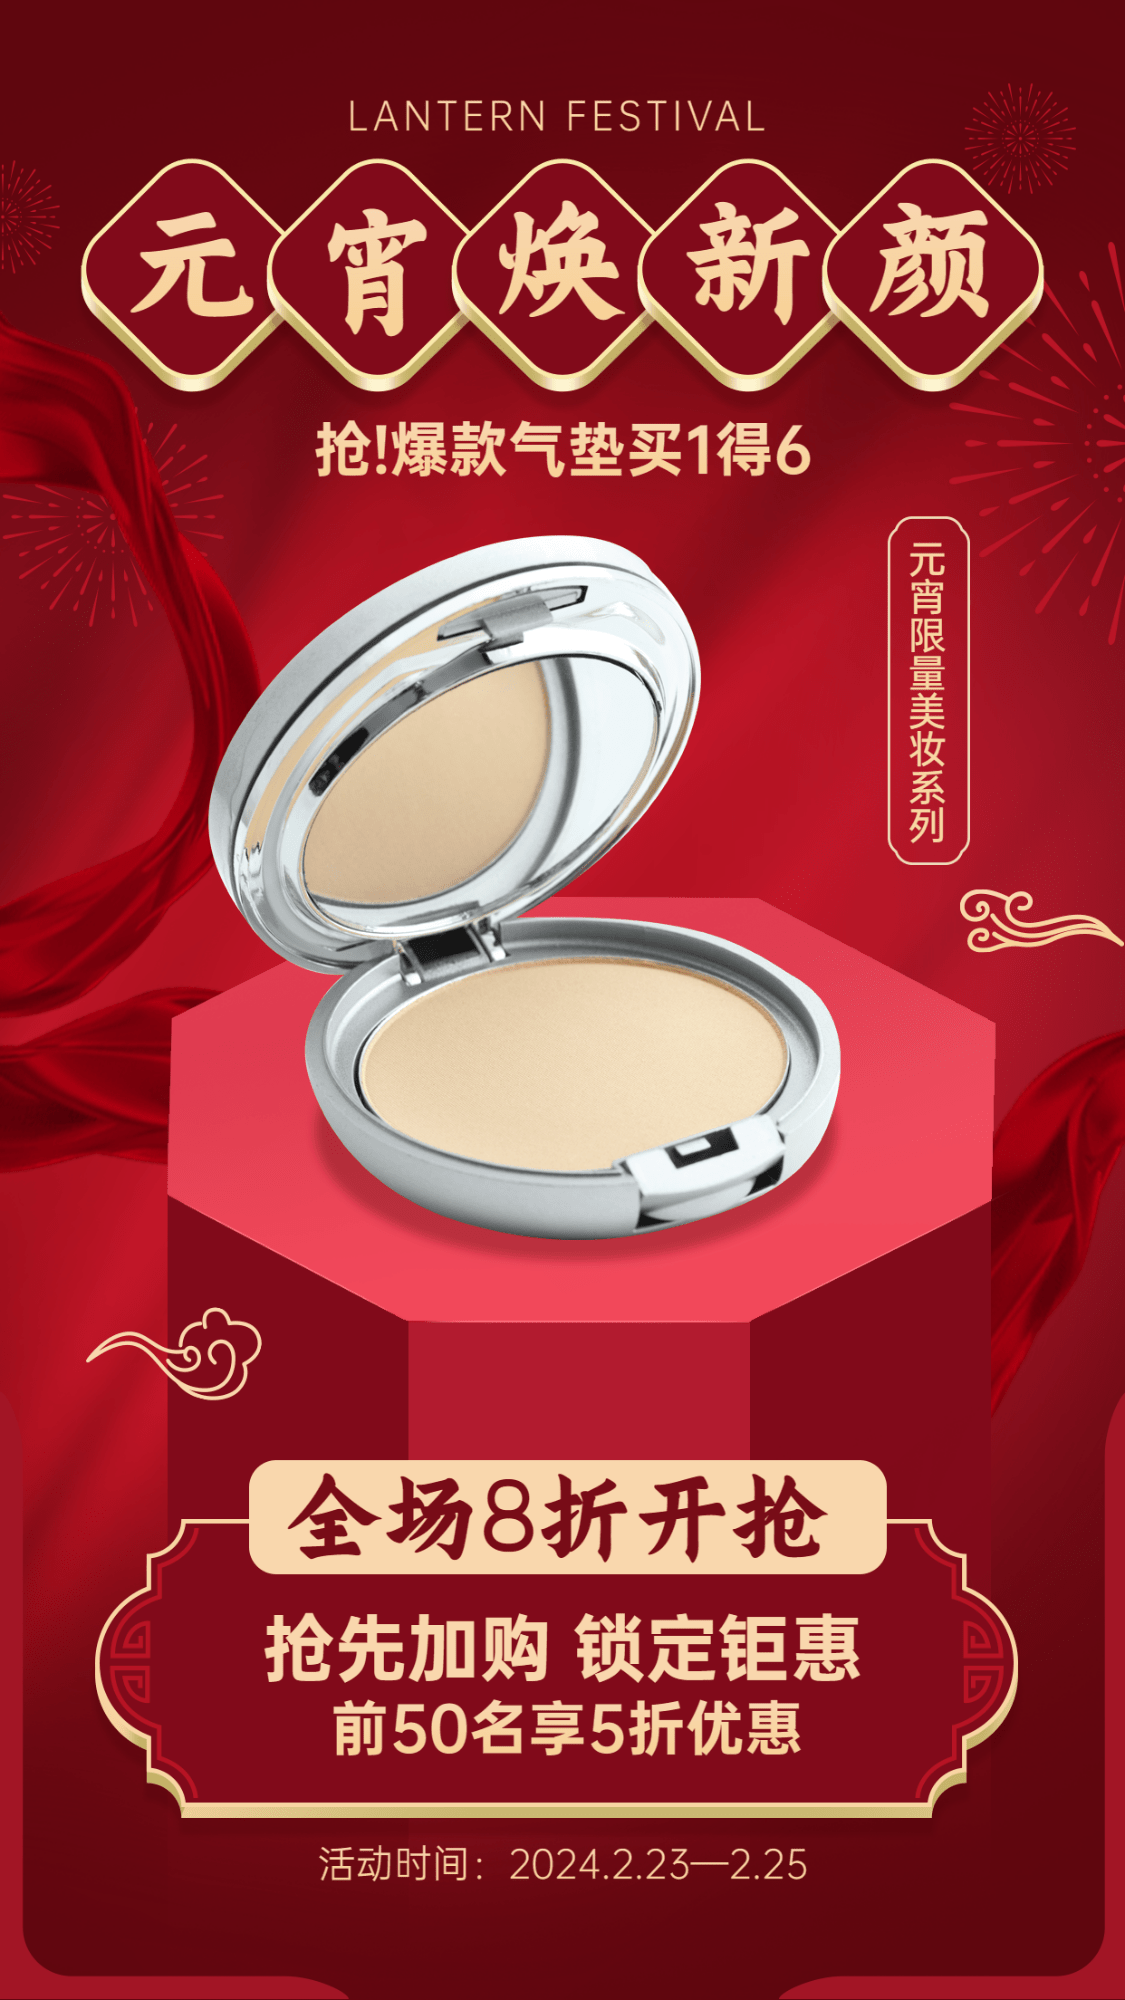 元宵节美妆产品营销促销活动手机海报